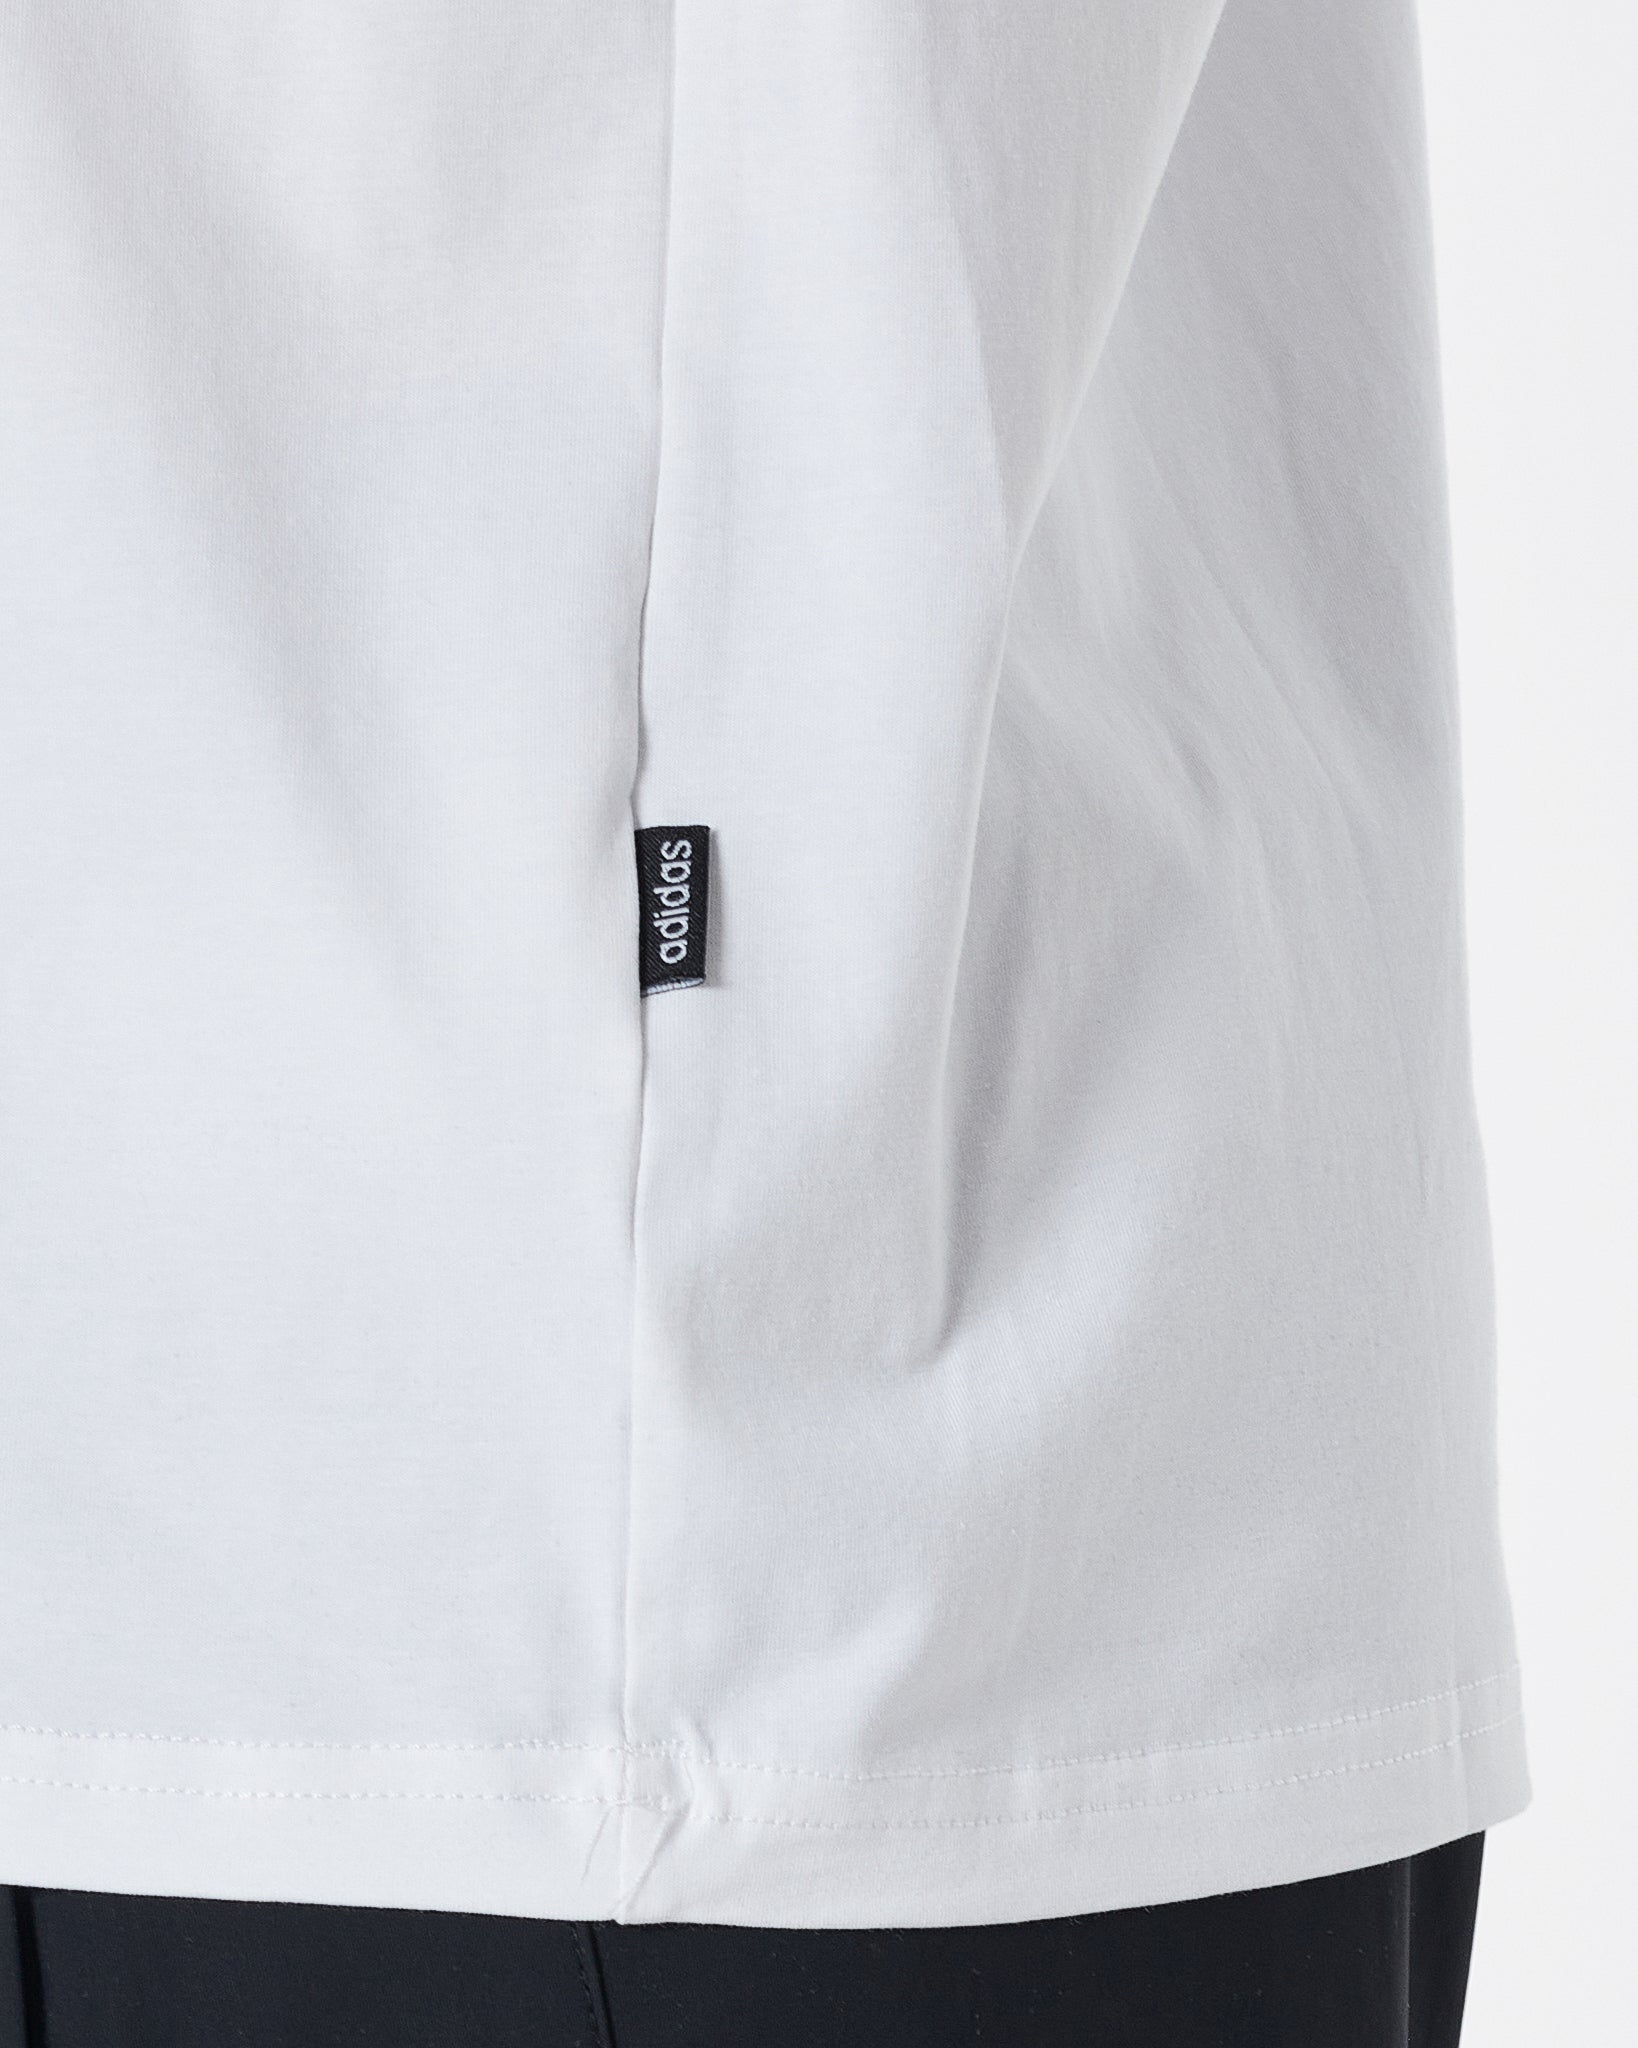 ADI Logo Printed Men White T-Shirt 13.90